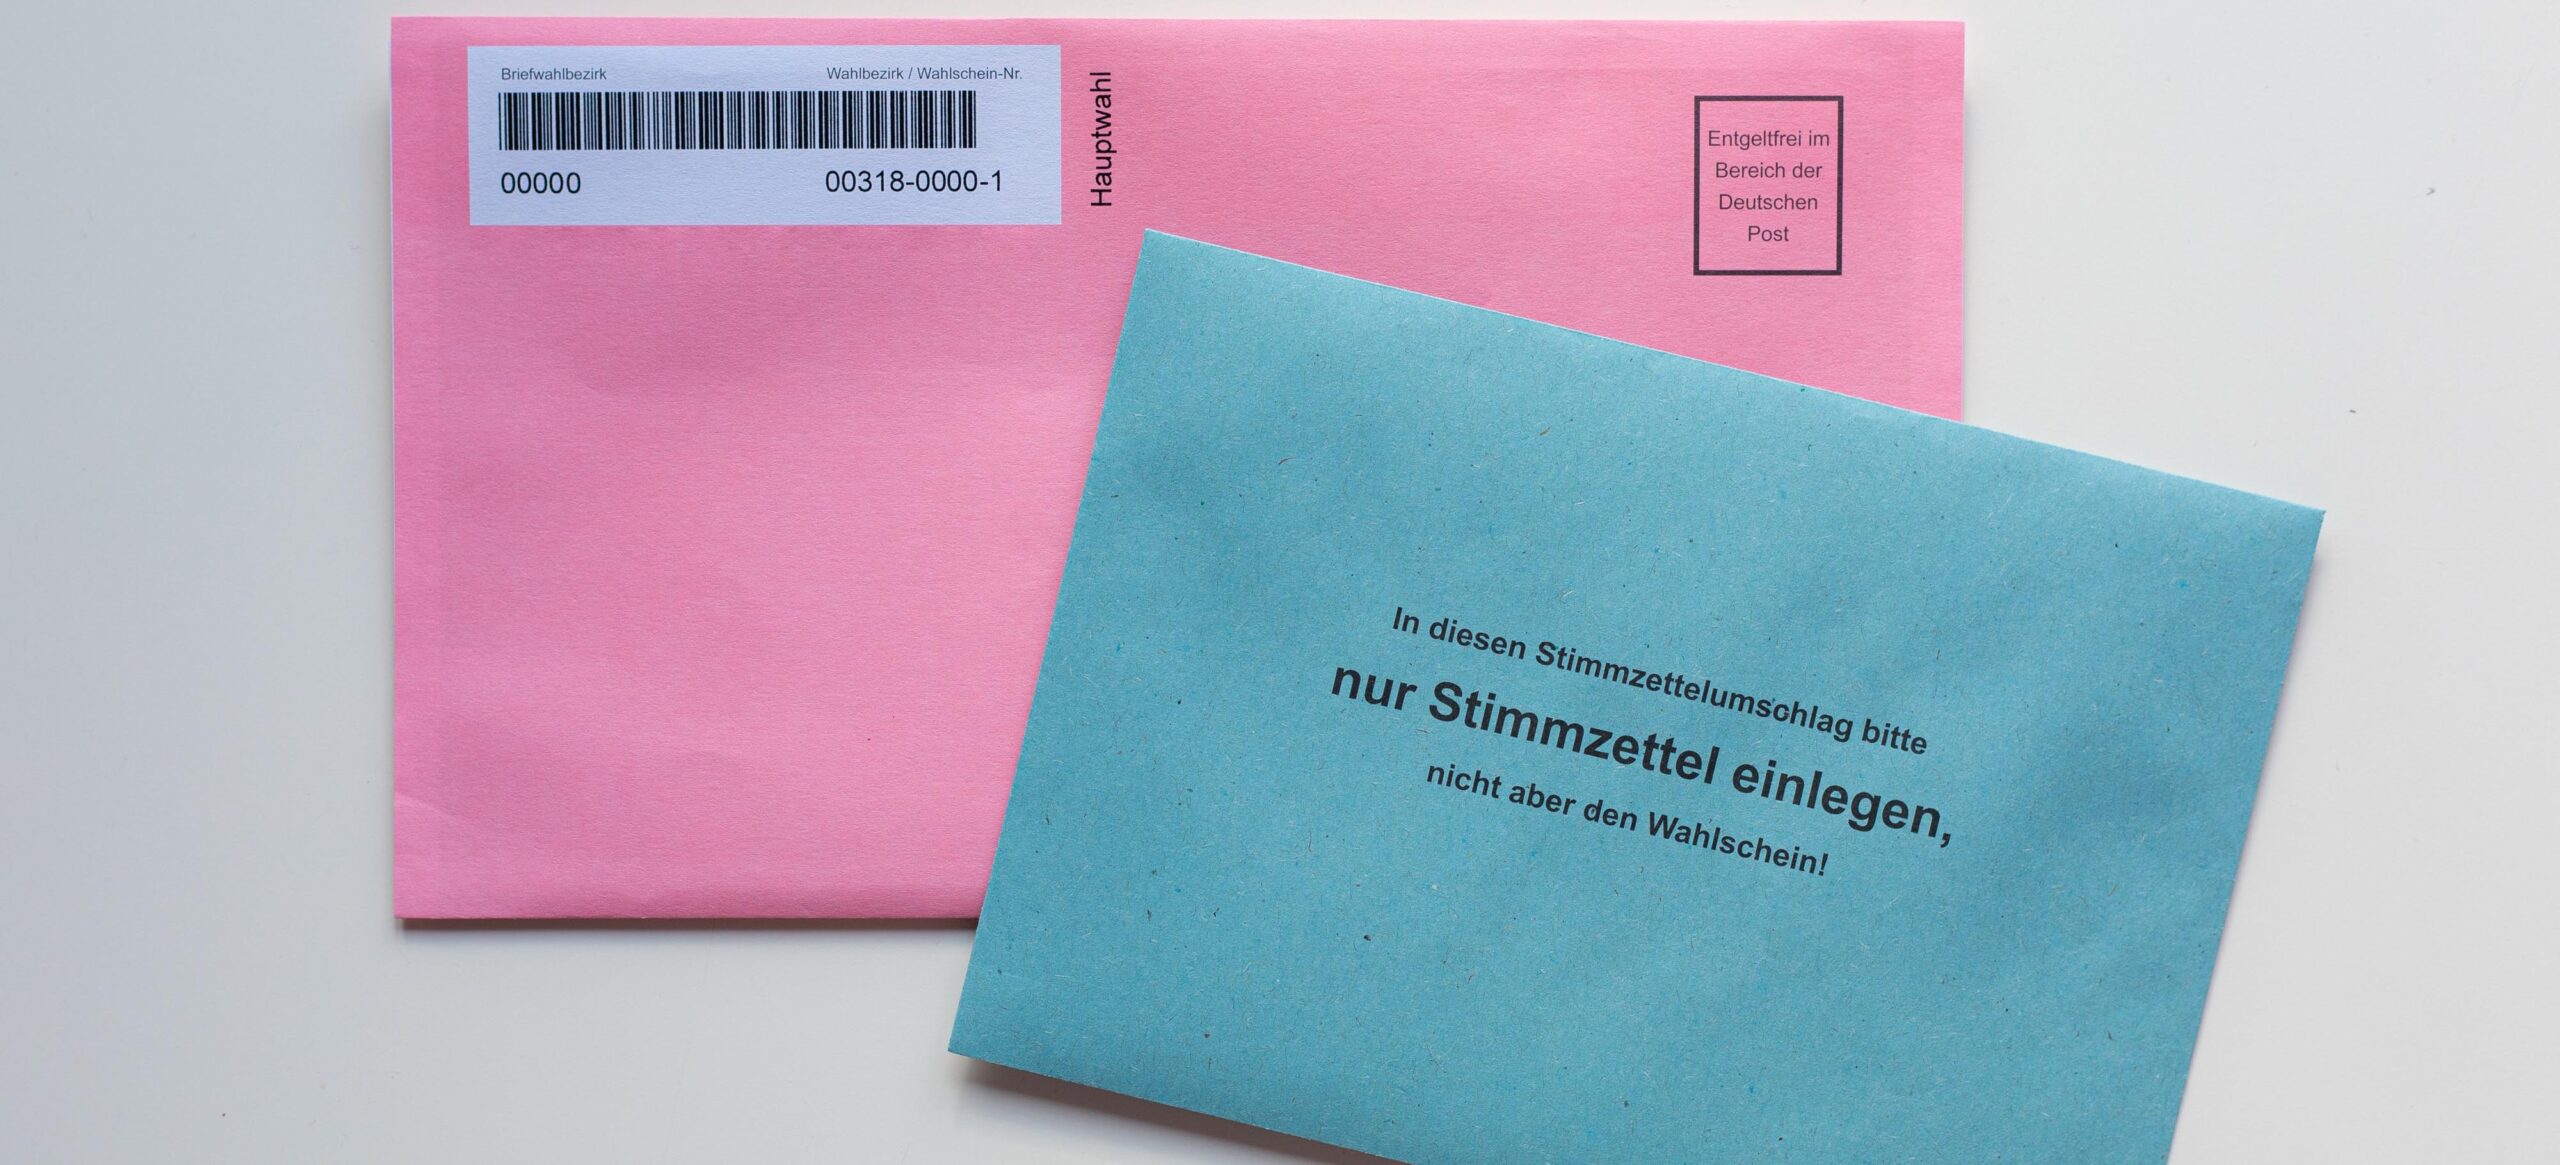 Bundestagswahl 2021 – Wahlüberblick zum Thema Arbeit